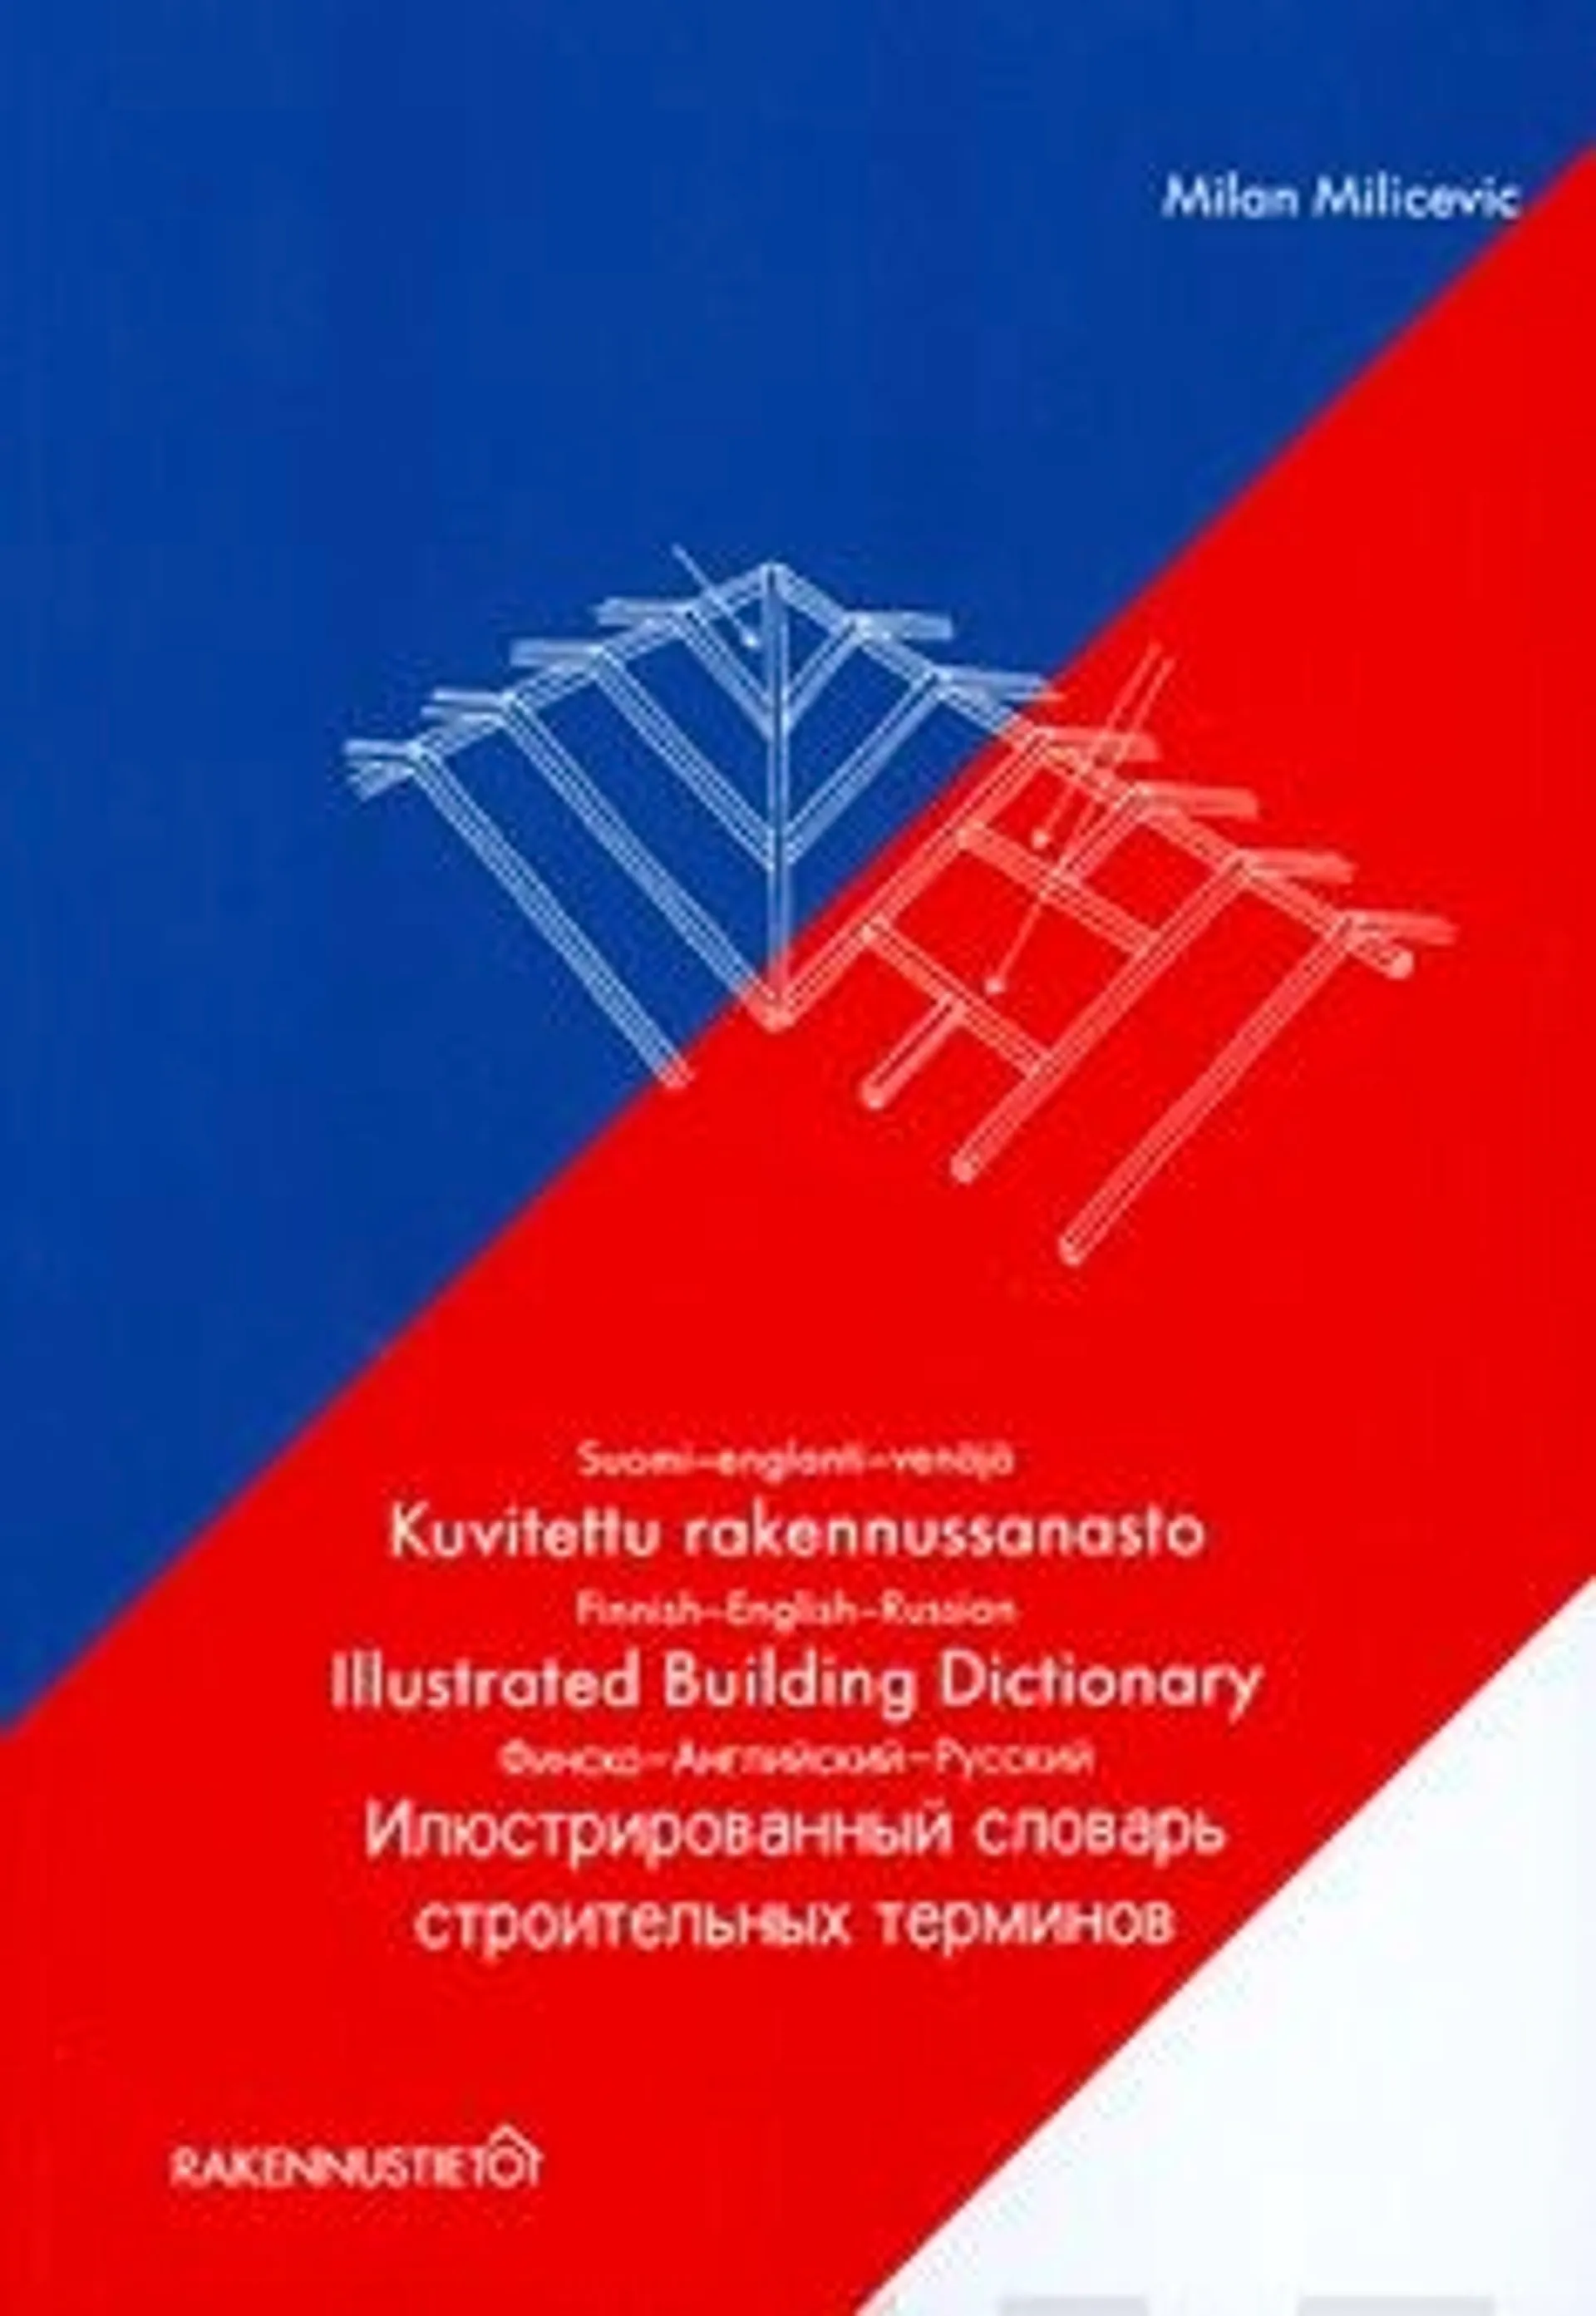 Milicevic, Kuvitettu rakennussanasto - Finnish-English-Russian; suomi-englanti-venäjä